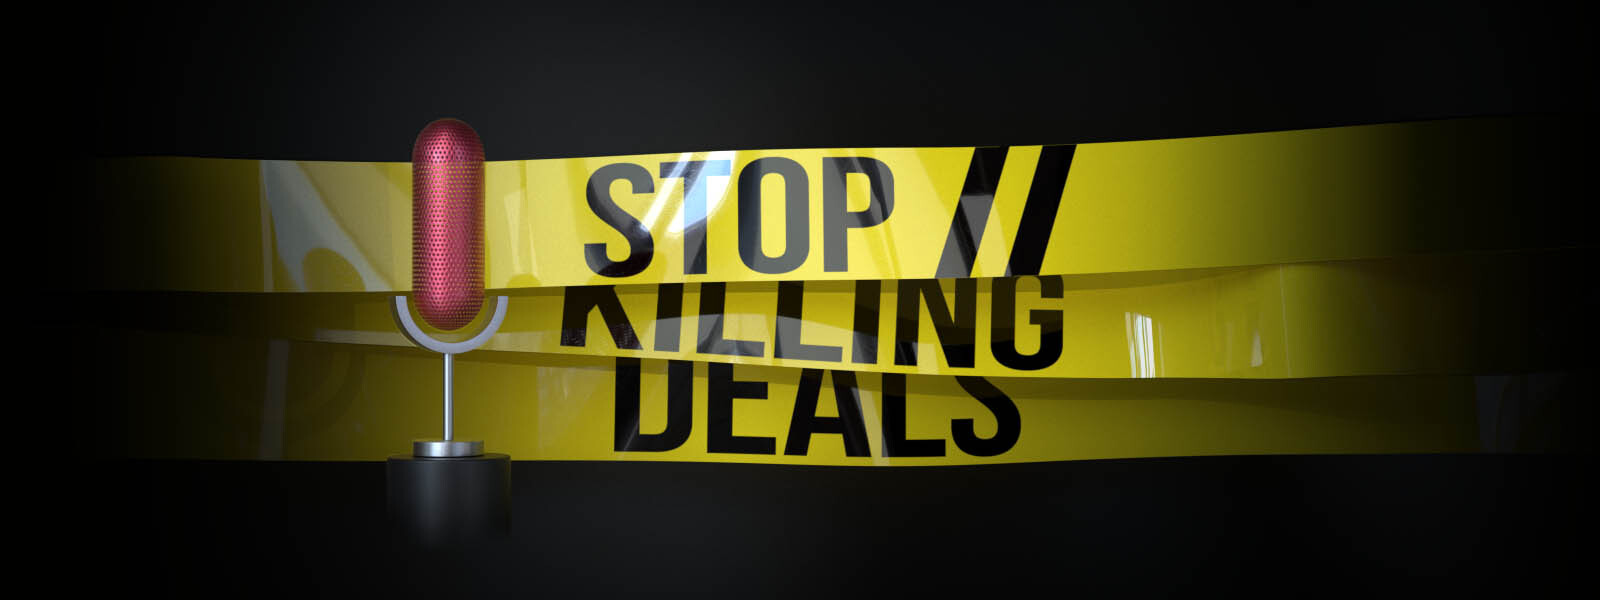 Stop Killing Deals